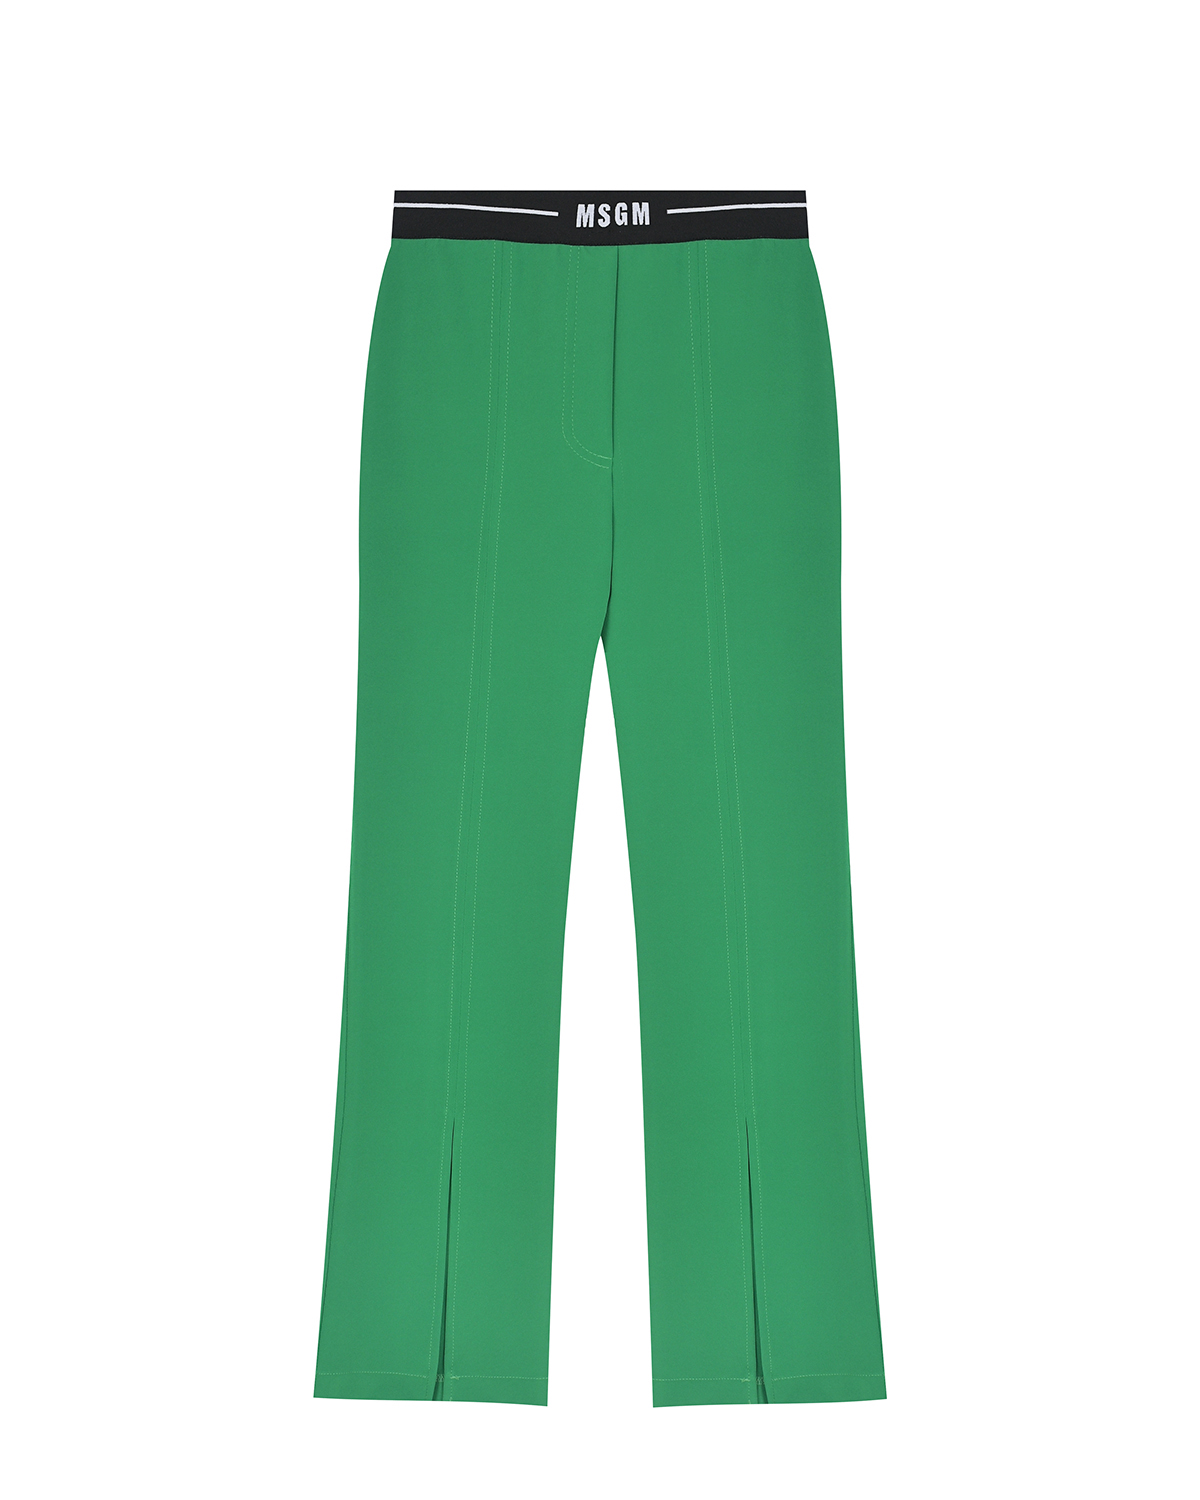 Зеленые брюки с черным поясом на резинке MSGM детские, размер 140, цвет зеленый